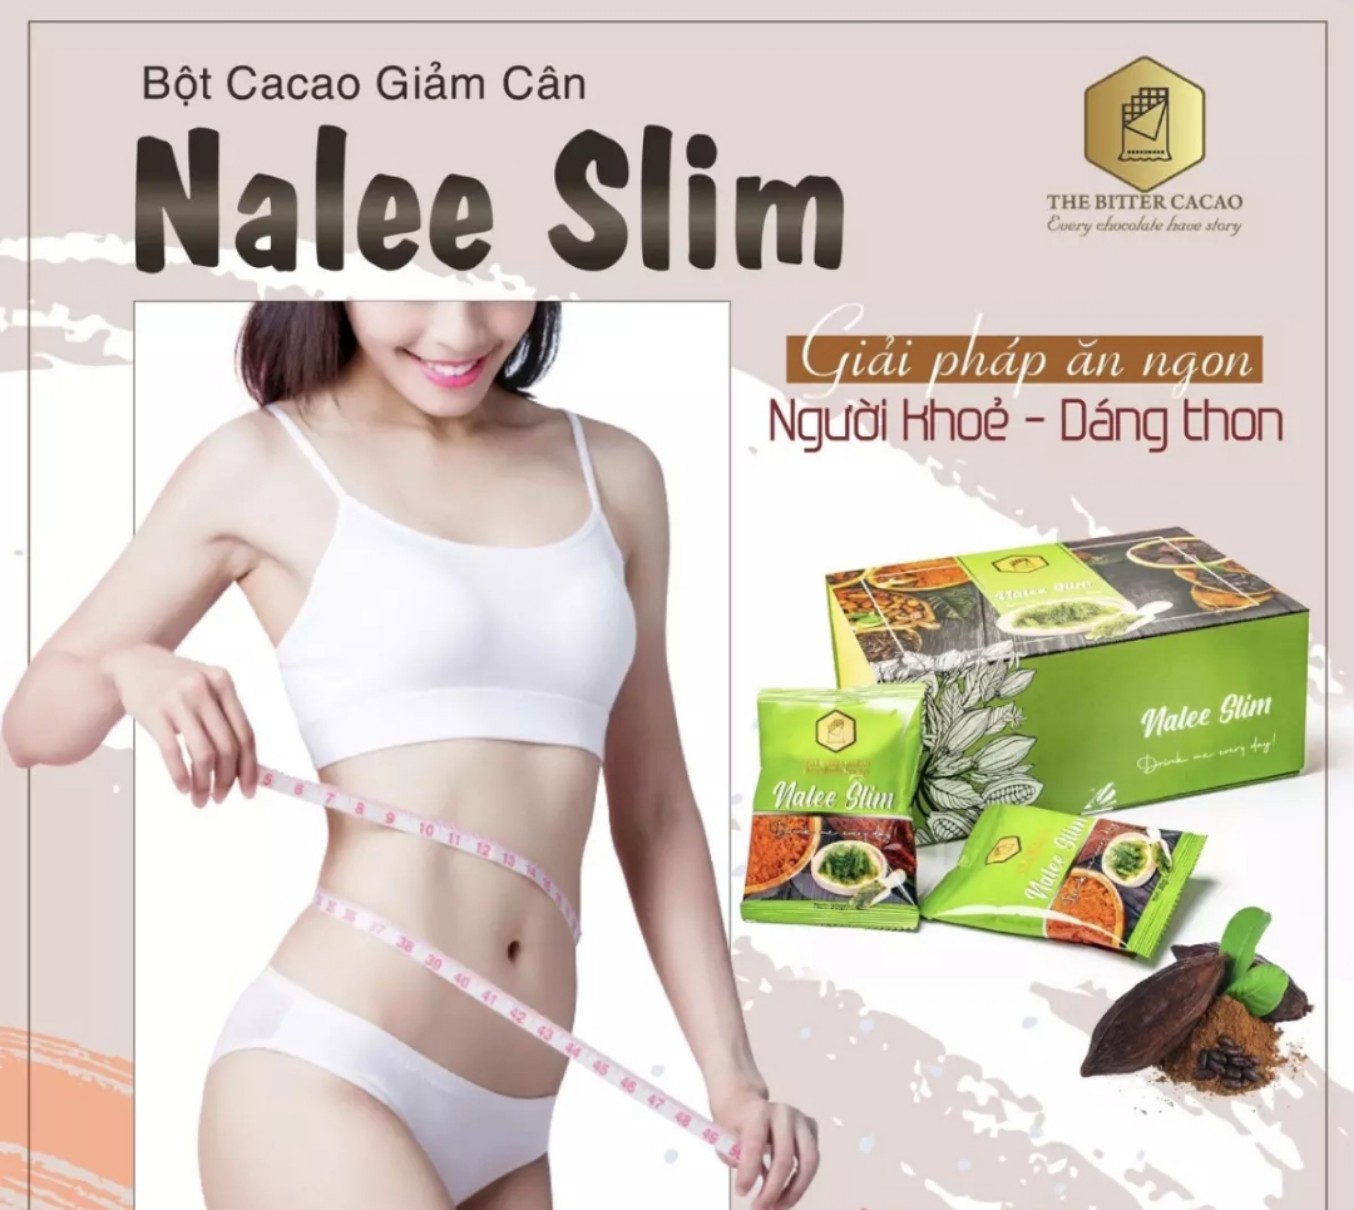 Cacao Nalee Slim - Hộp 20 gói - Cacao giảm cân an toàn